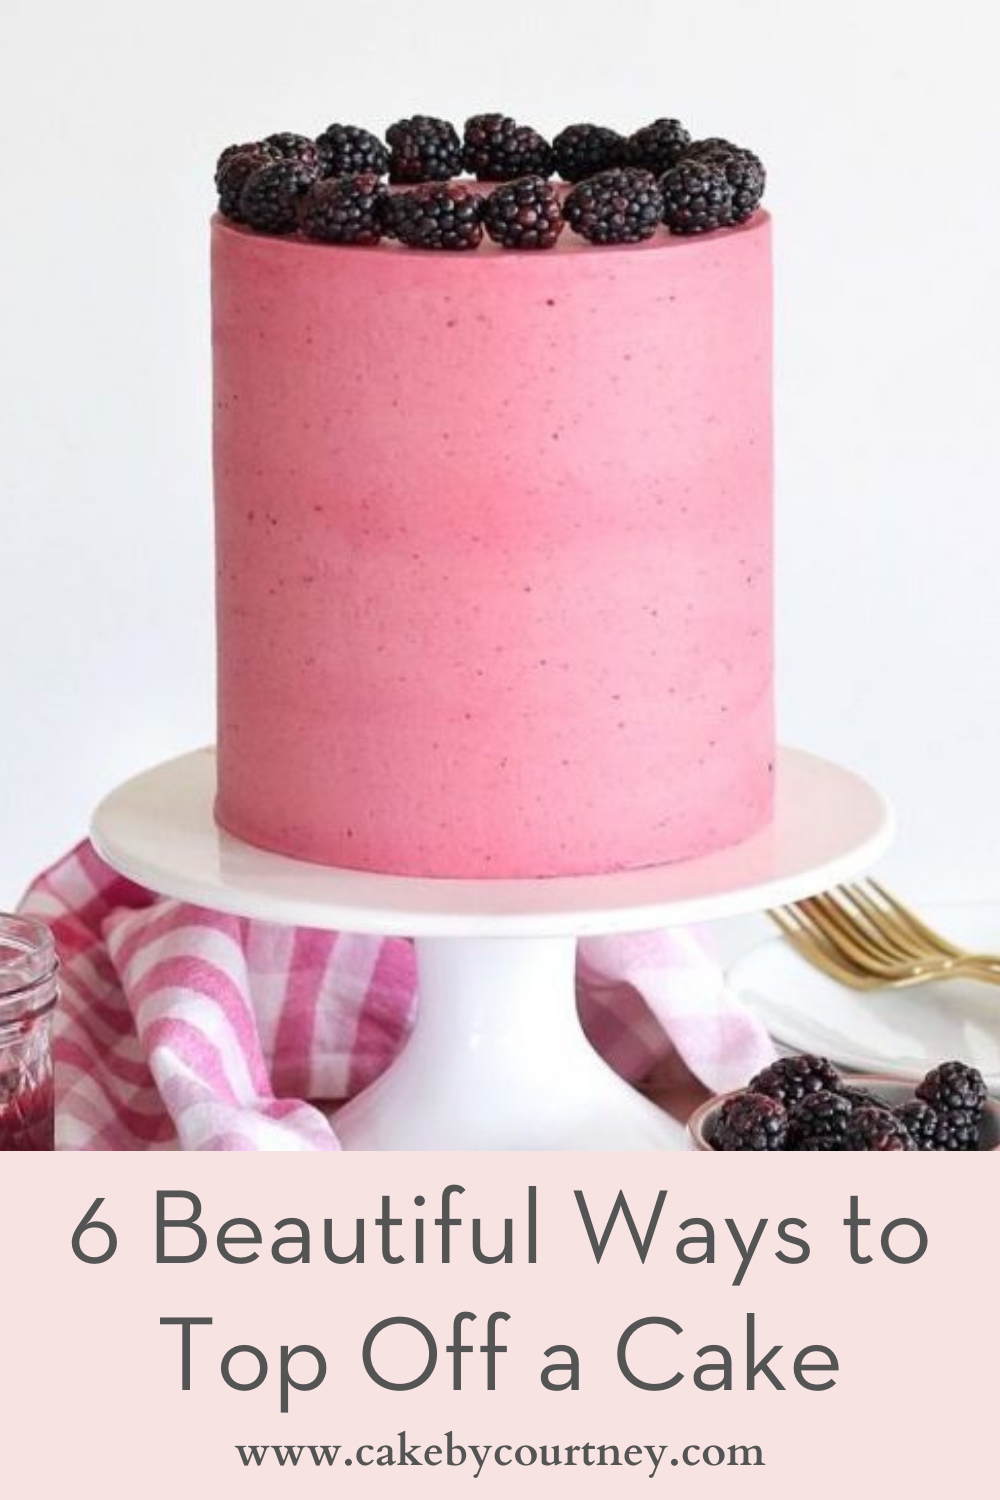 6 beautiful ways to top off a cake. www.cakebycourtney.com